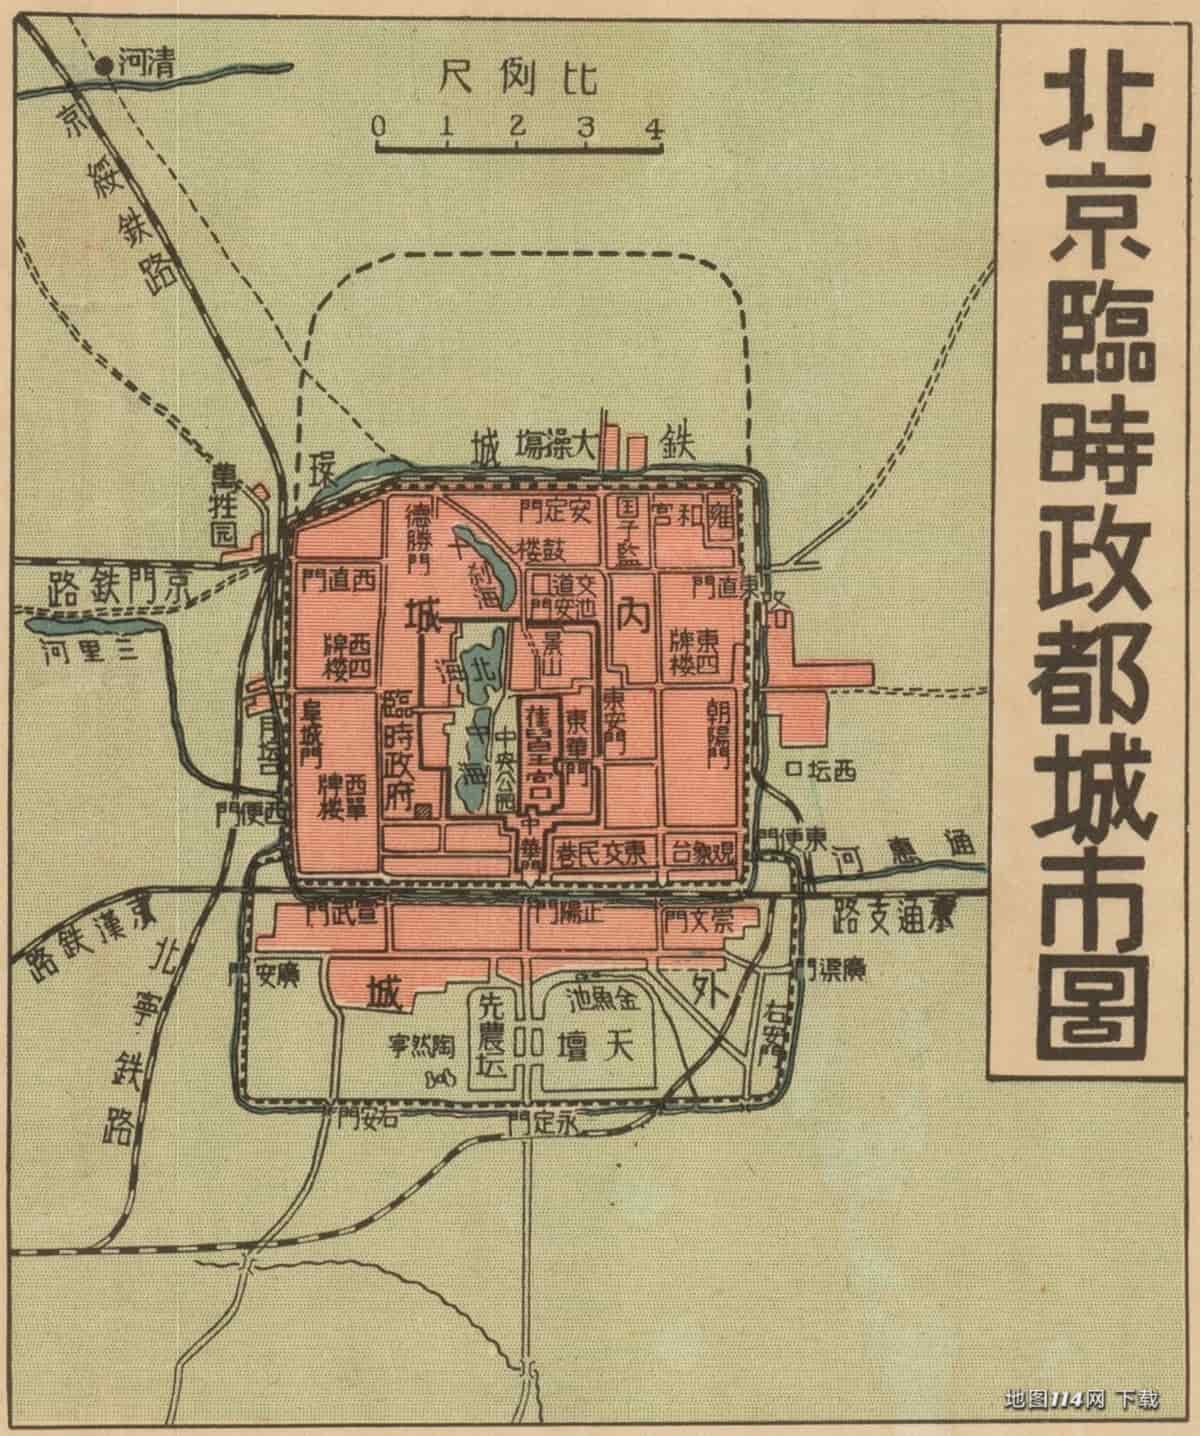 1939年汪伪建国大地图附图北京临时政都城市图.jpg